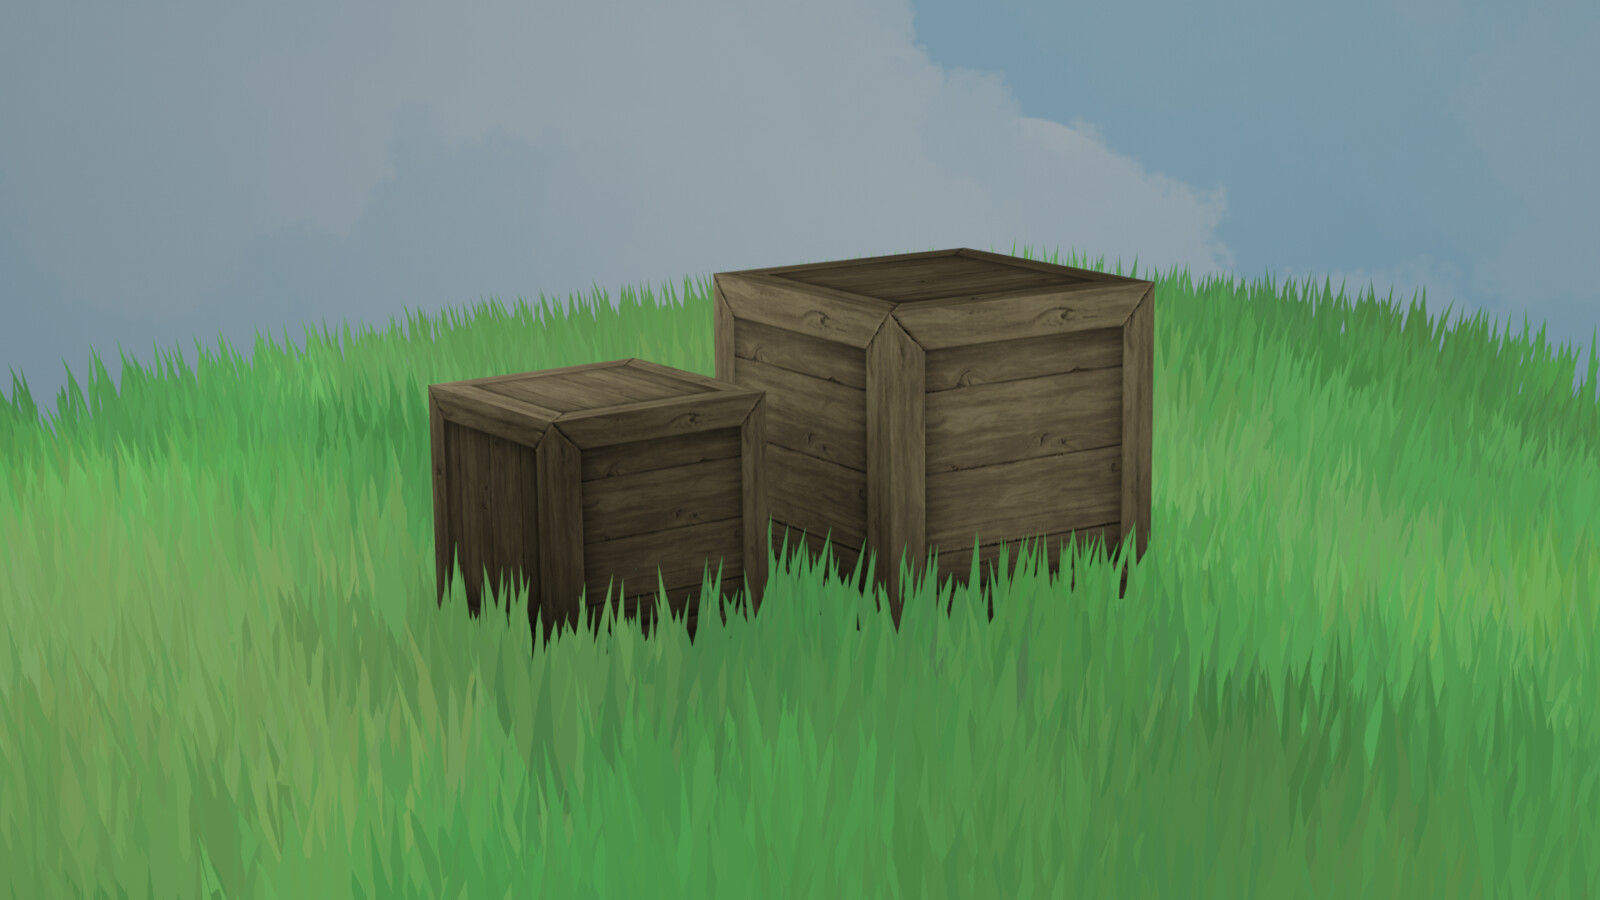 Blender Scene: Crate Models + textures